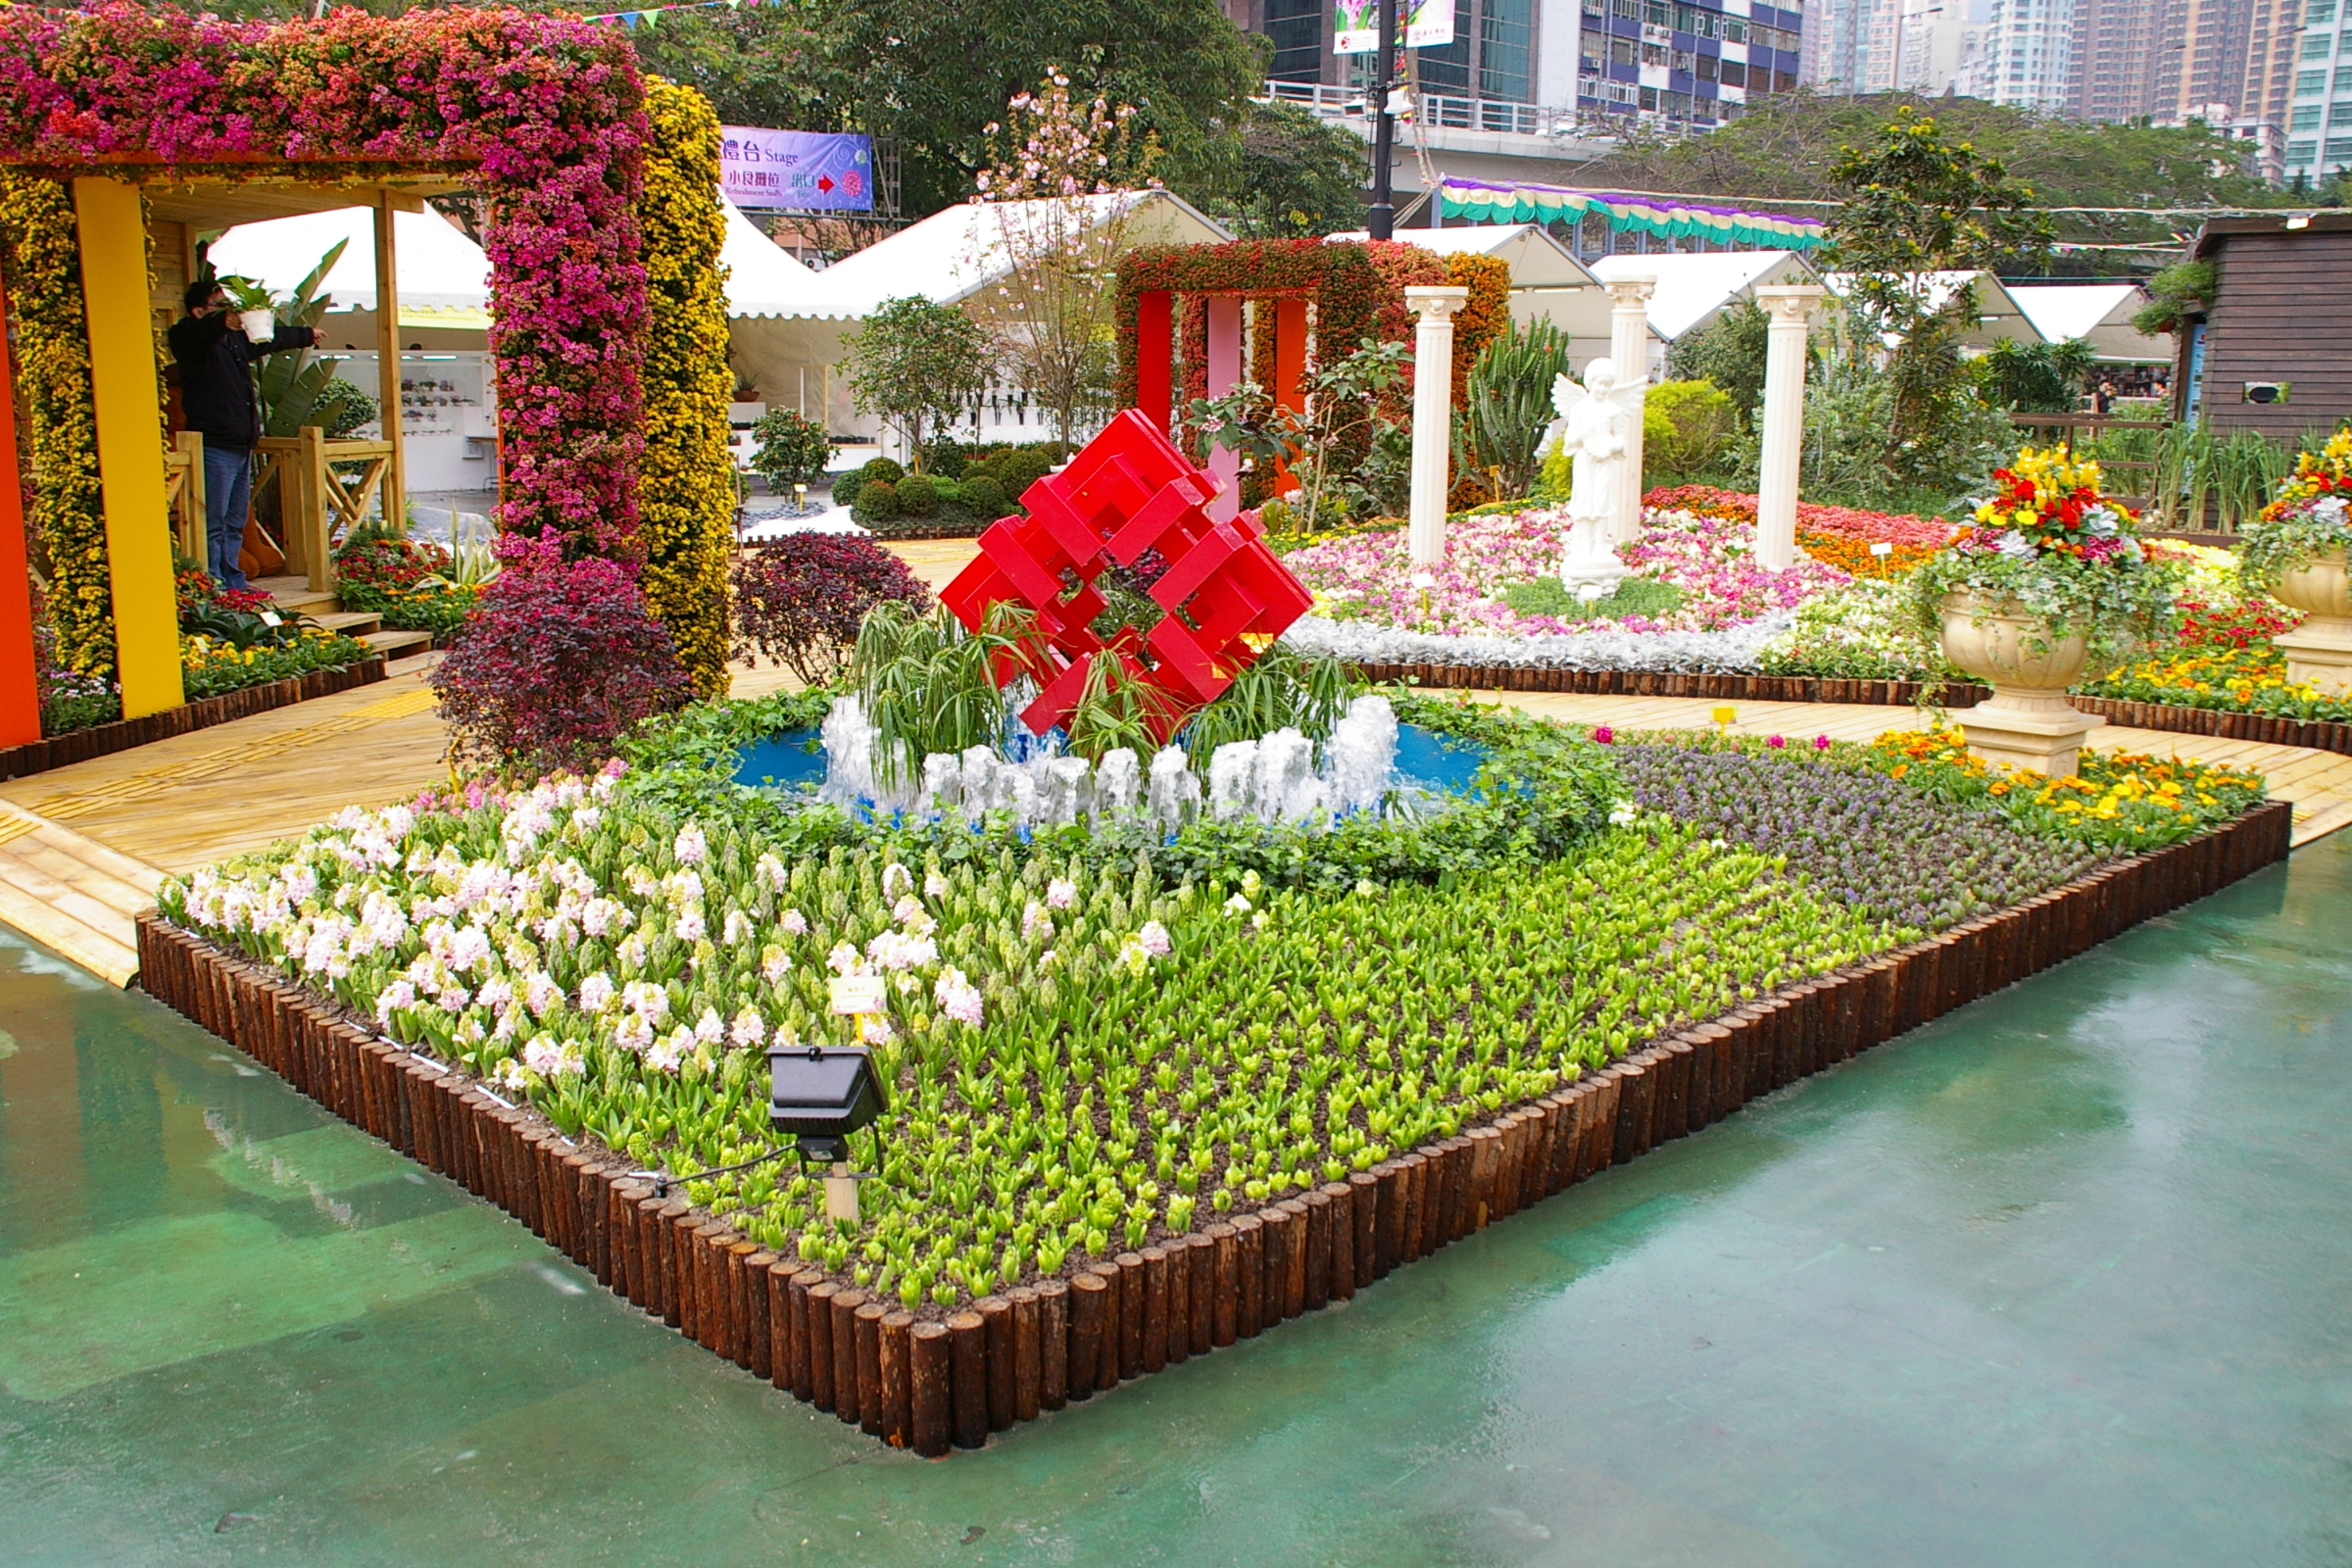 房委會於二零一二年香港花卉展覽的展品 1